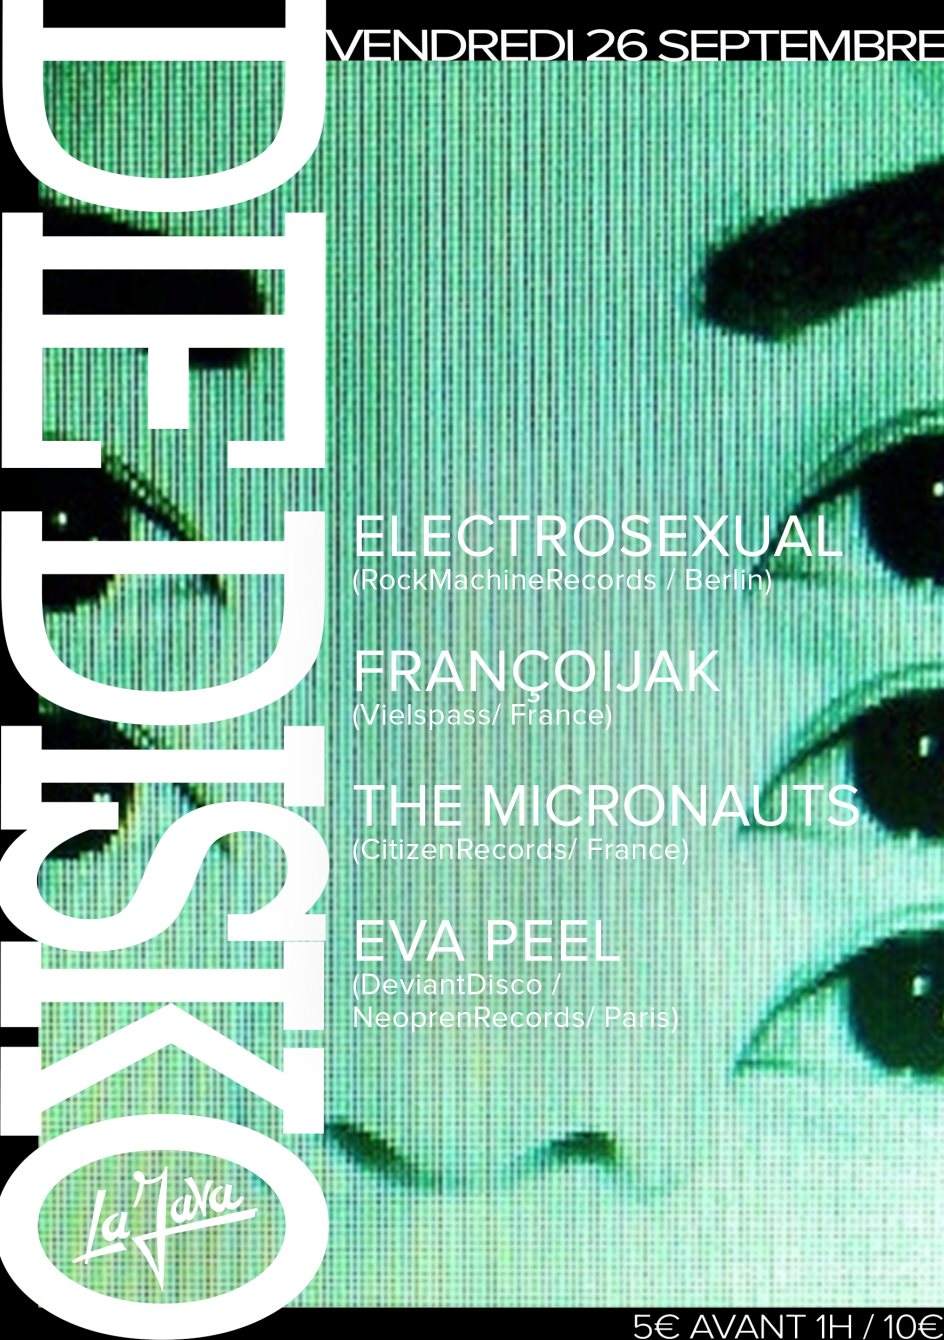 Die Disko with Electrosexual, Françoijak, Eva Peel - フライヤー表